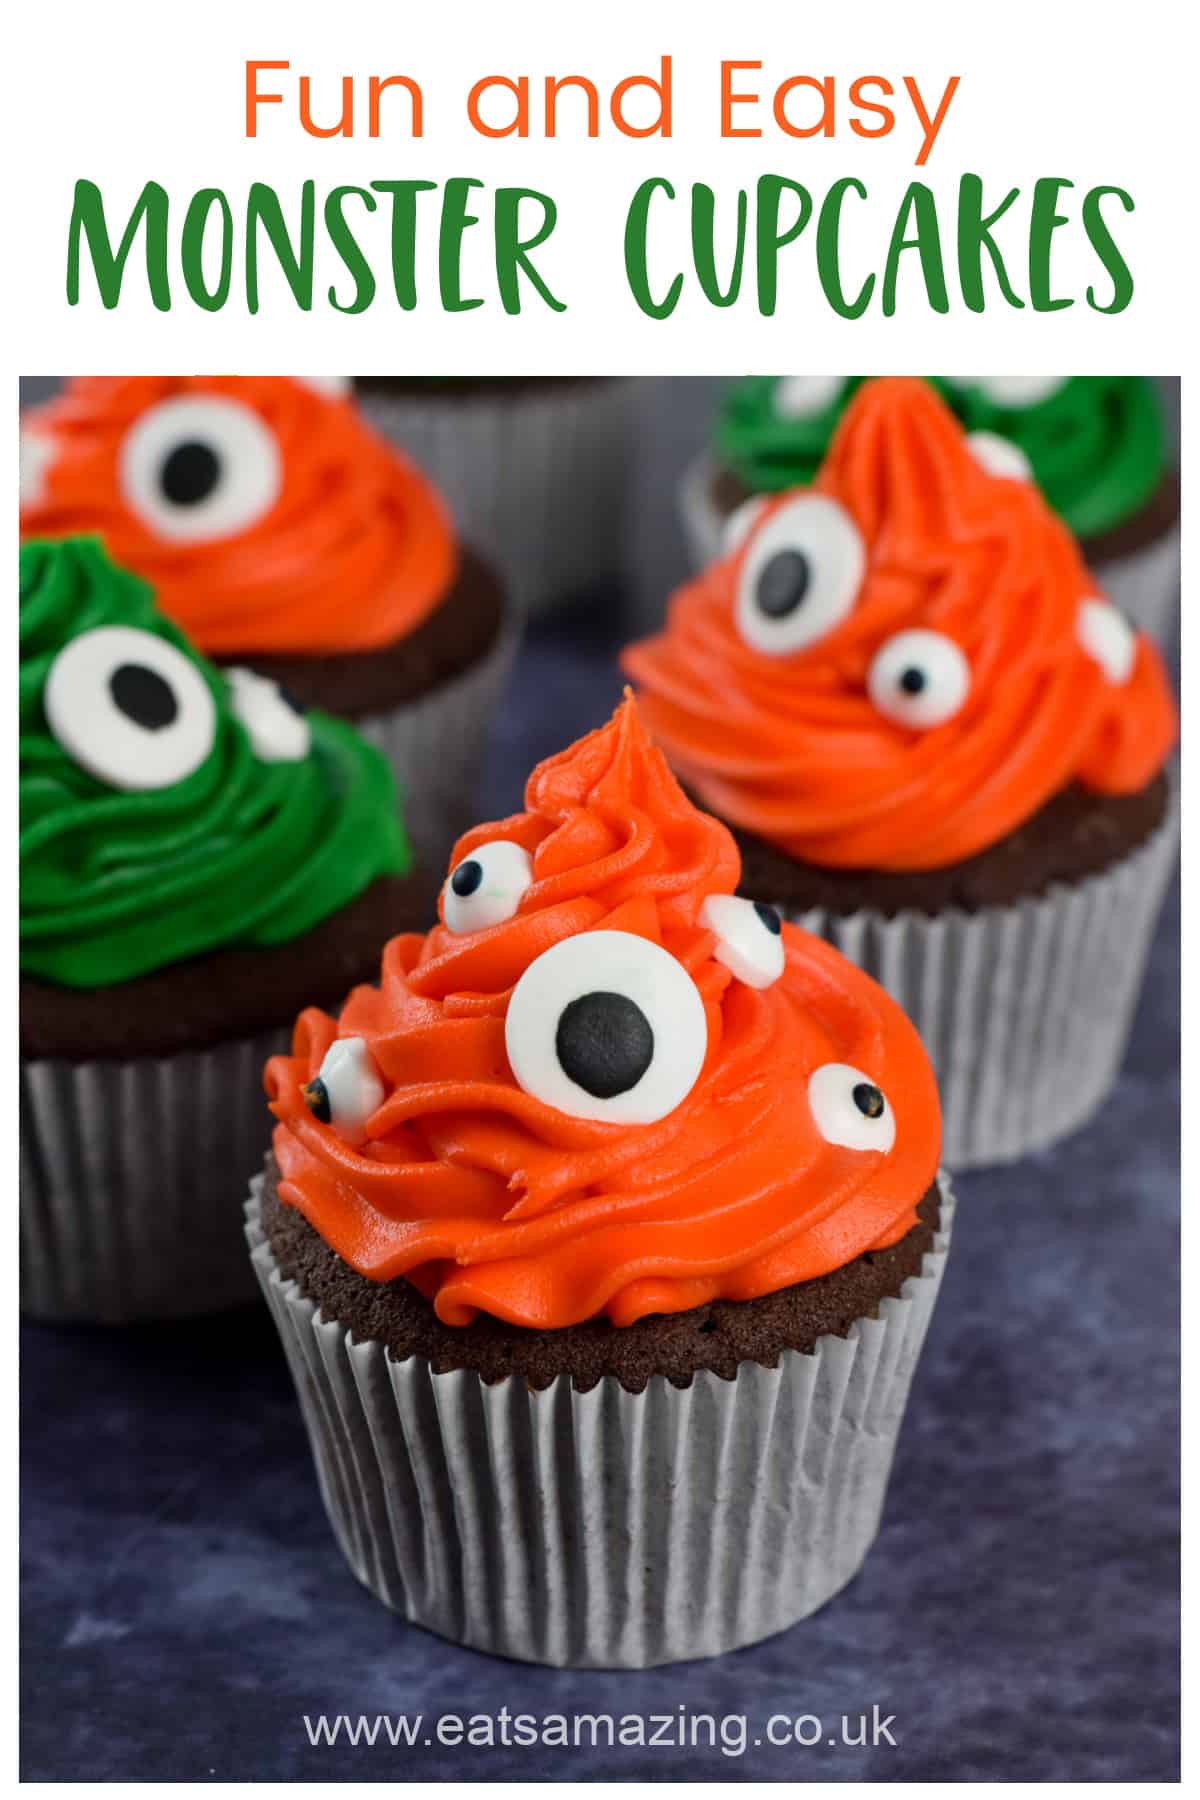 Comment faire des cupcakes monstres amusants et faciles - Recette de pâtisserie d'Halloween pour les enfants